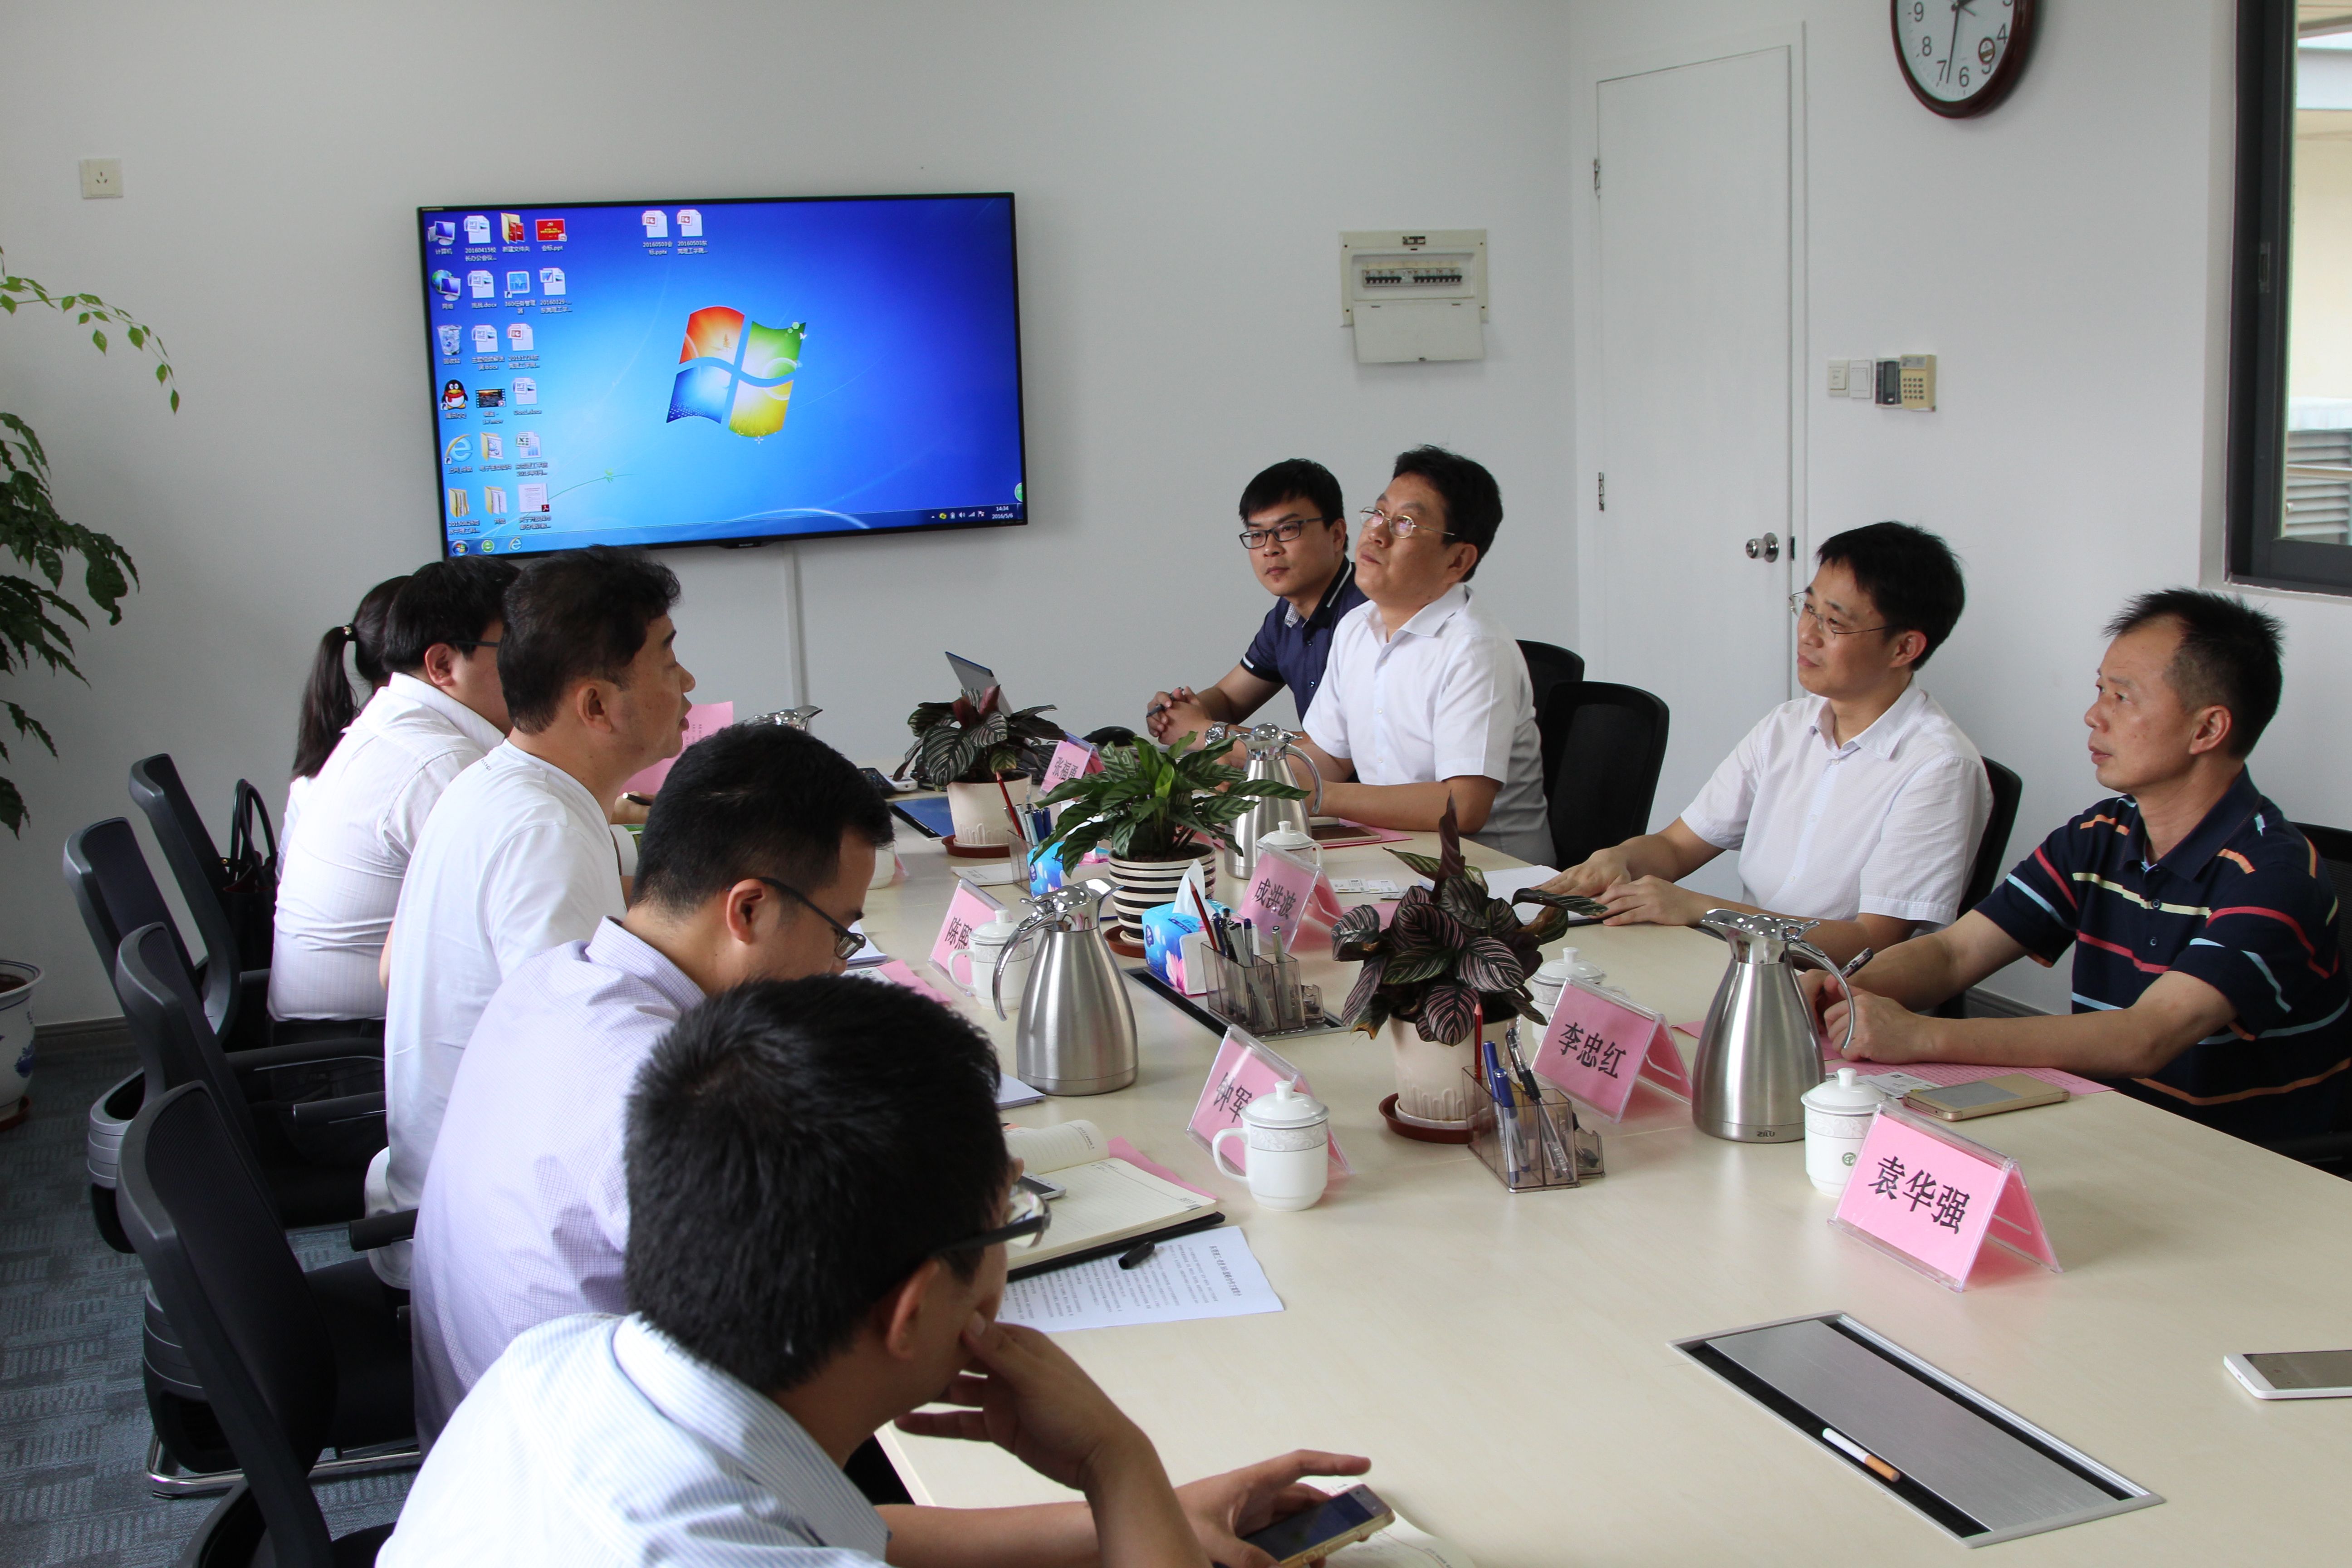 奇虎360公司高级副总裁陈熙同来校洽谈学院共建合作